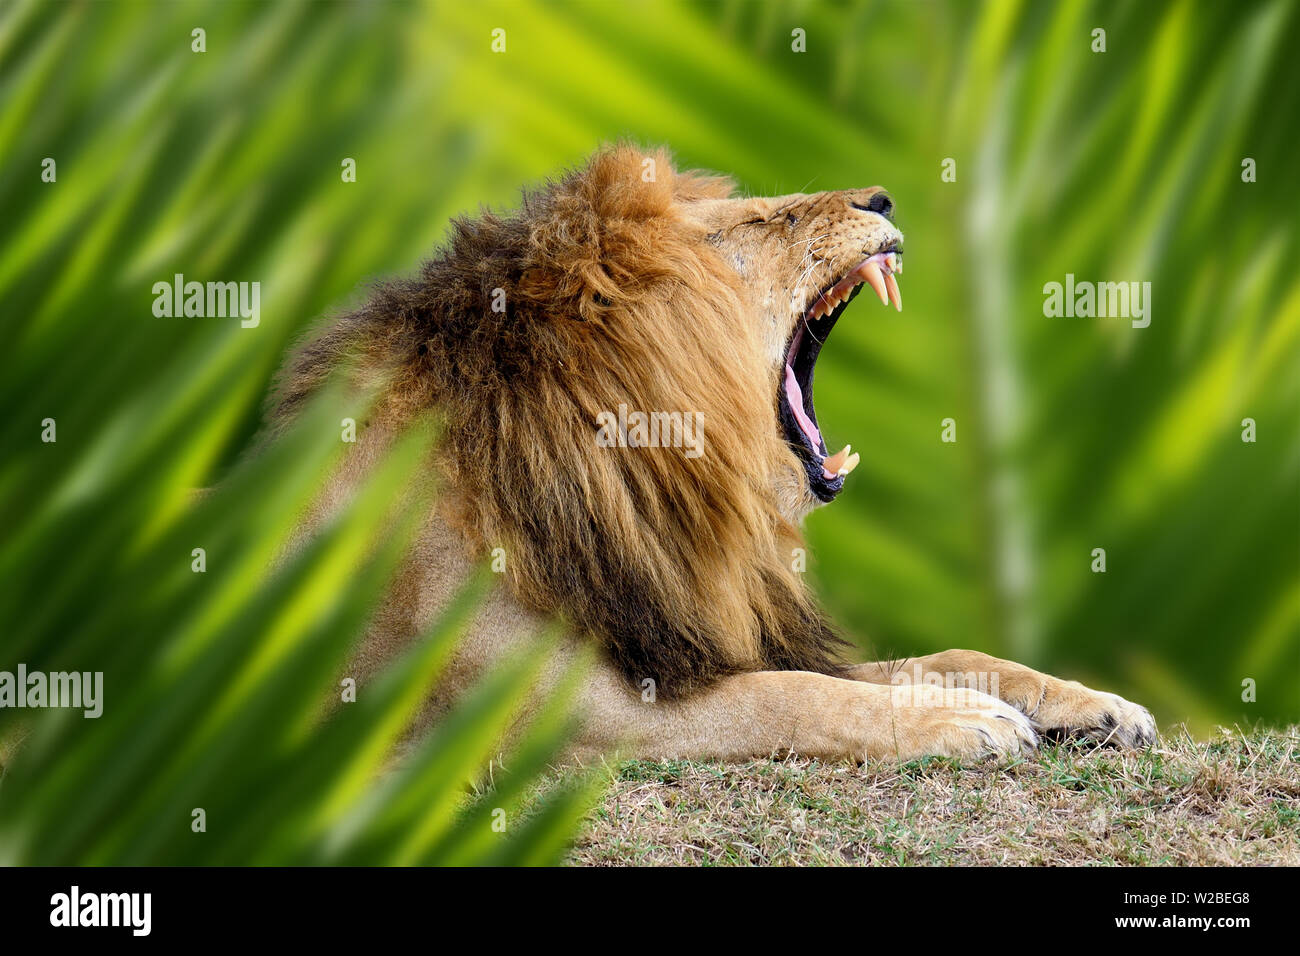 Close up portrait Lion dans la jungle avec feuille Banque D'Images